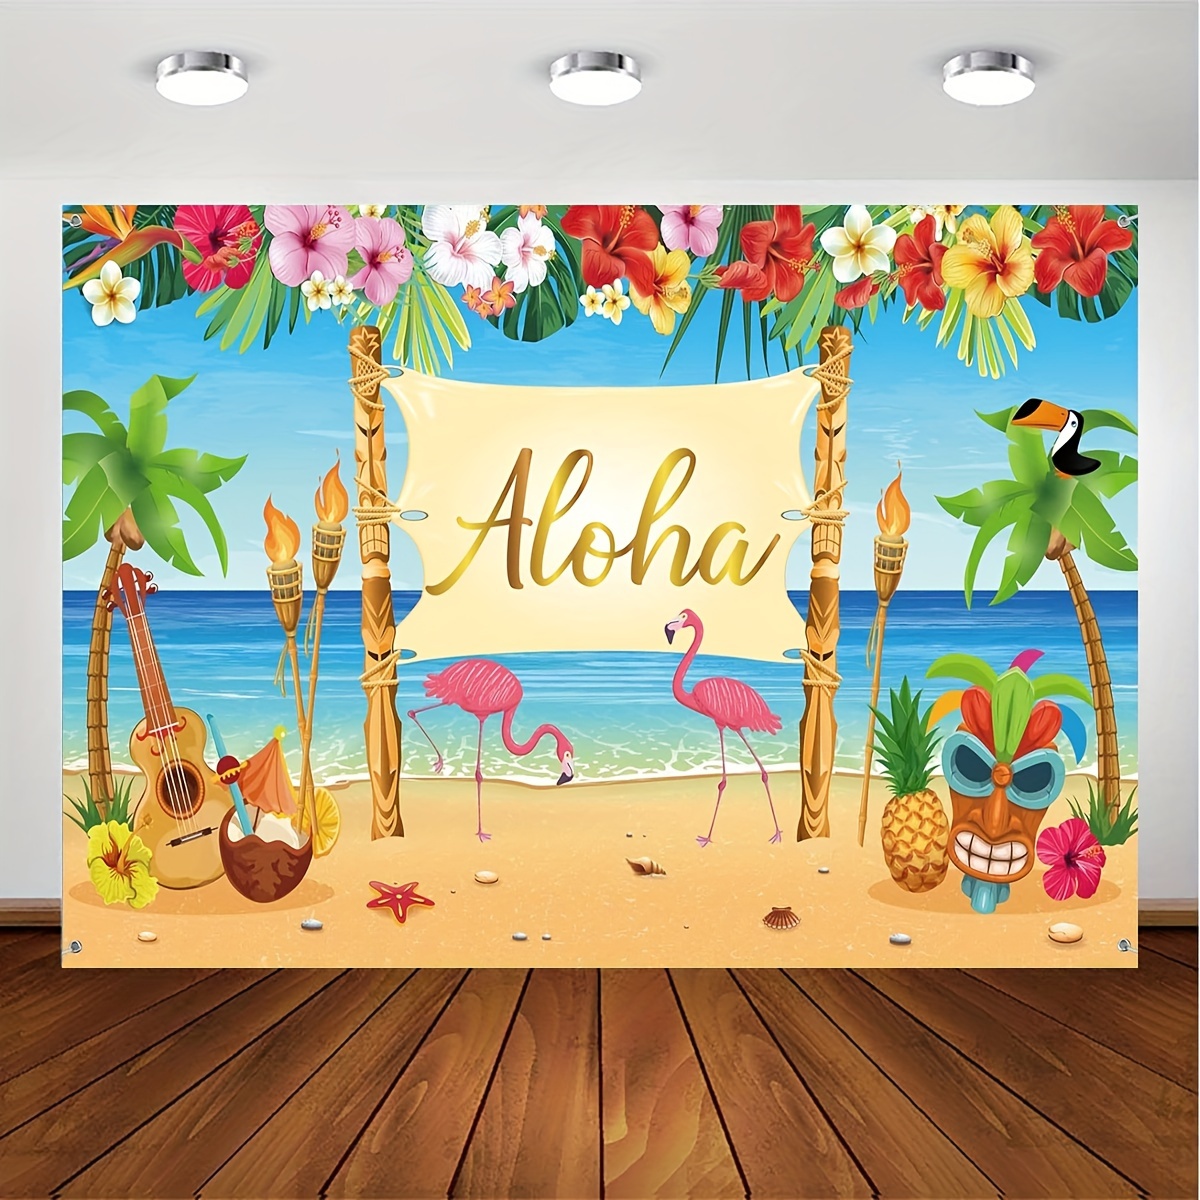 138 Piezas De Decoraciones De Fiesta Hawaiana, Suministros De Cumpleaños  Tropicales, Decoraciones De Fiesta Hawaiana Con Tema De Playa De Verano